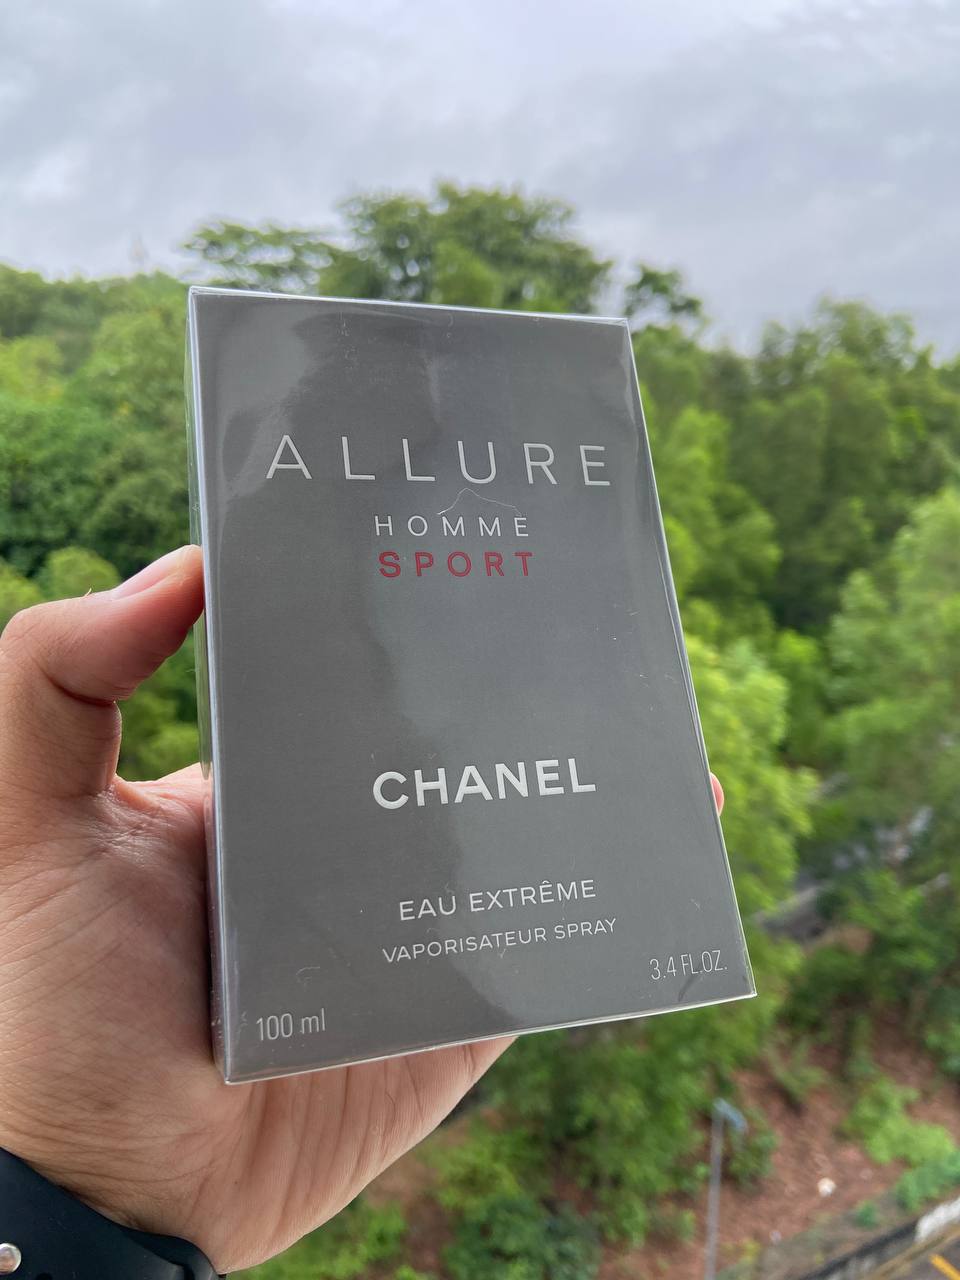  Chanel Allure Homme Sport Eau Extreme Eau de Toilette